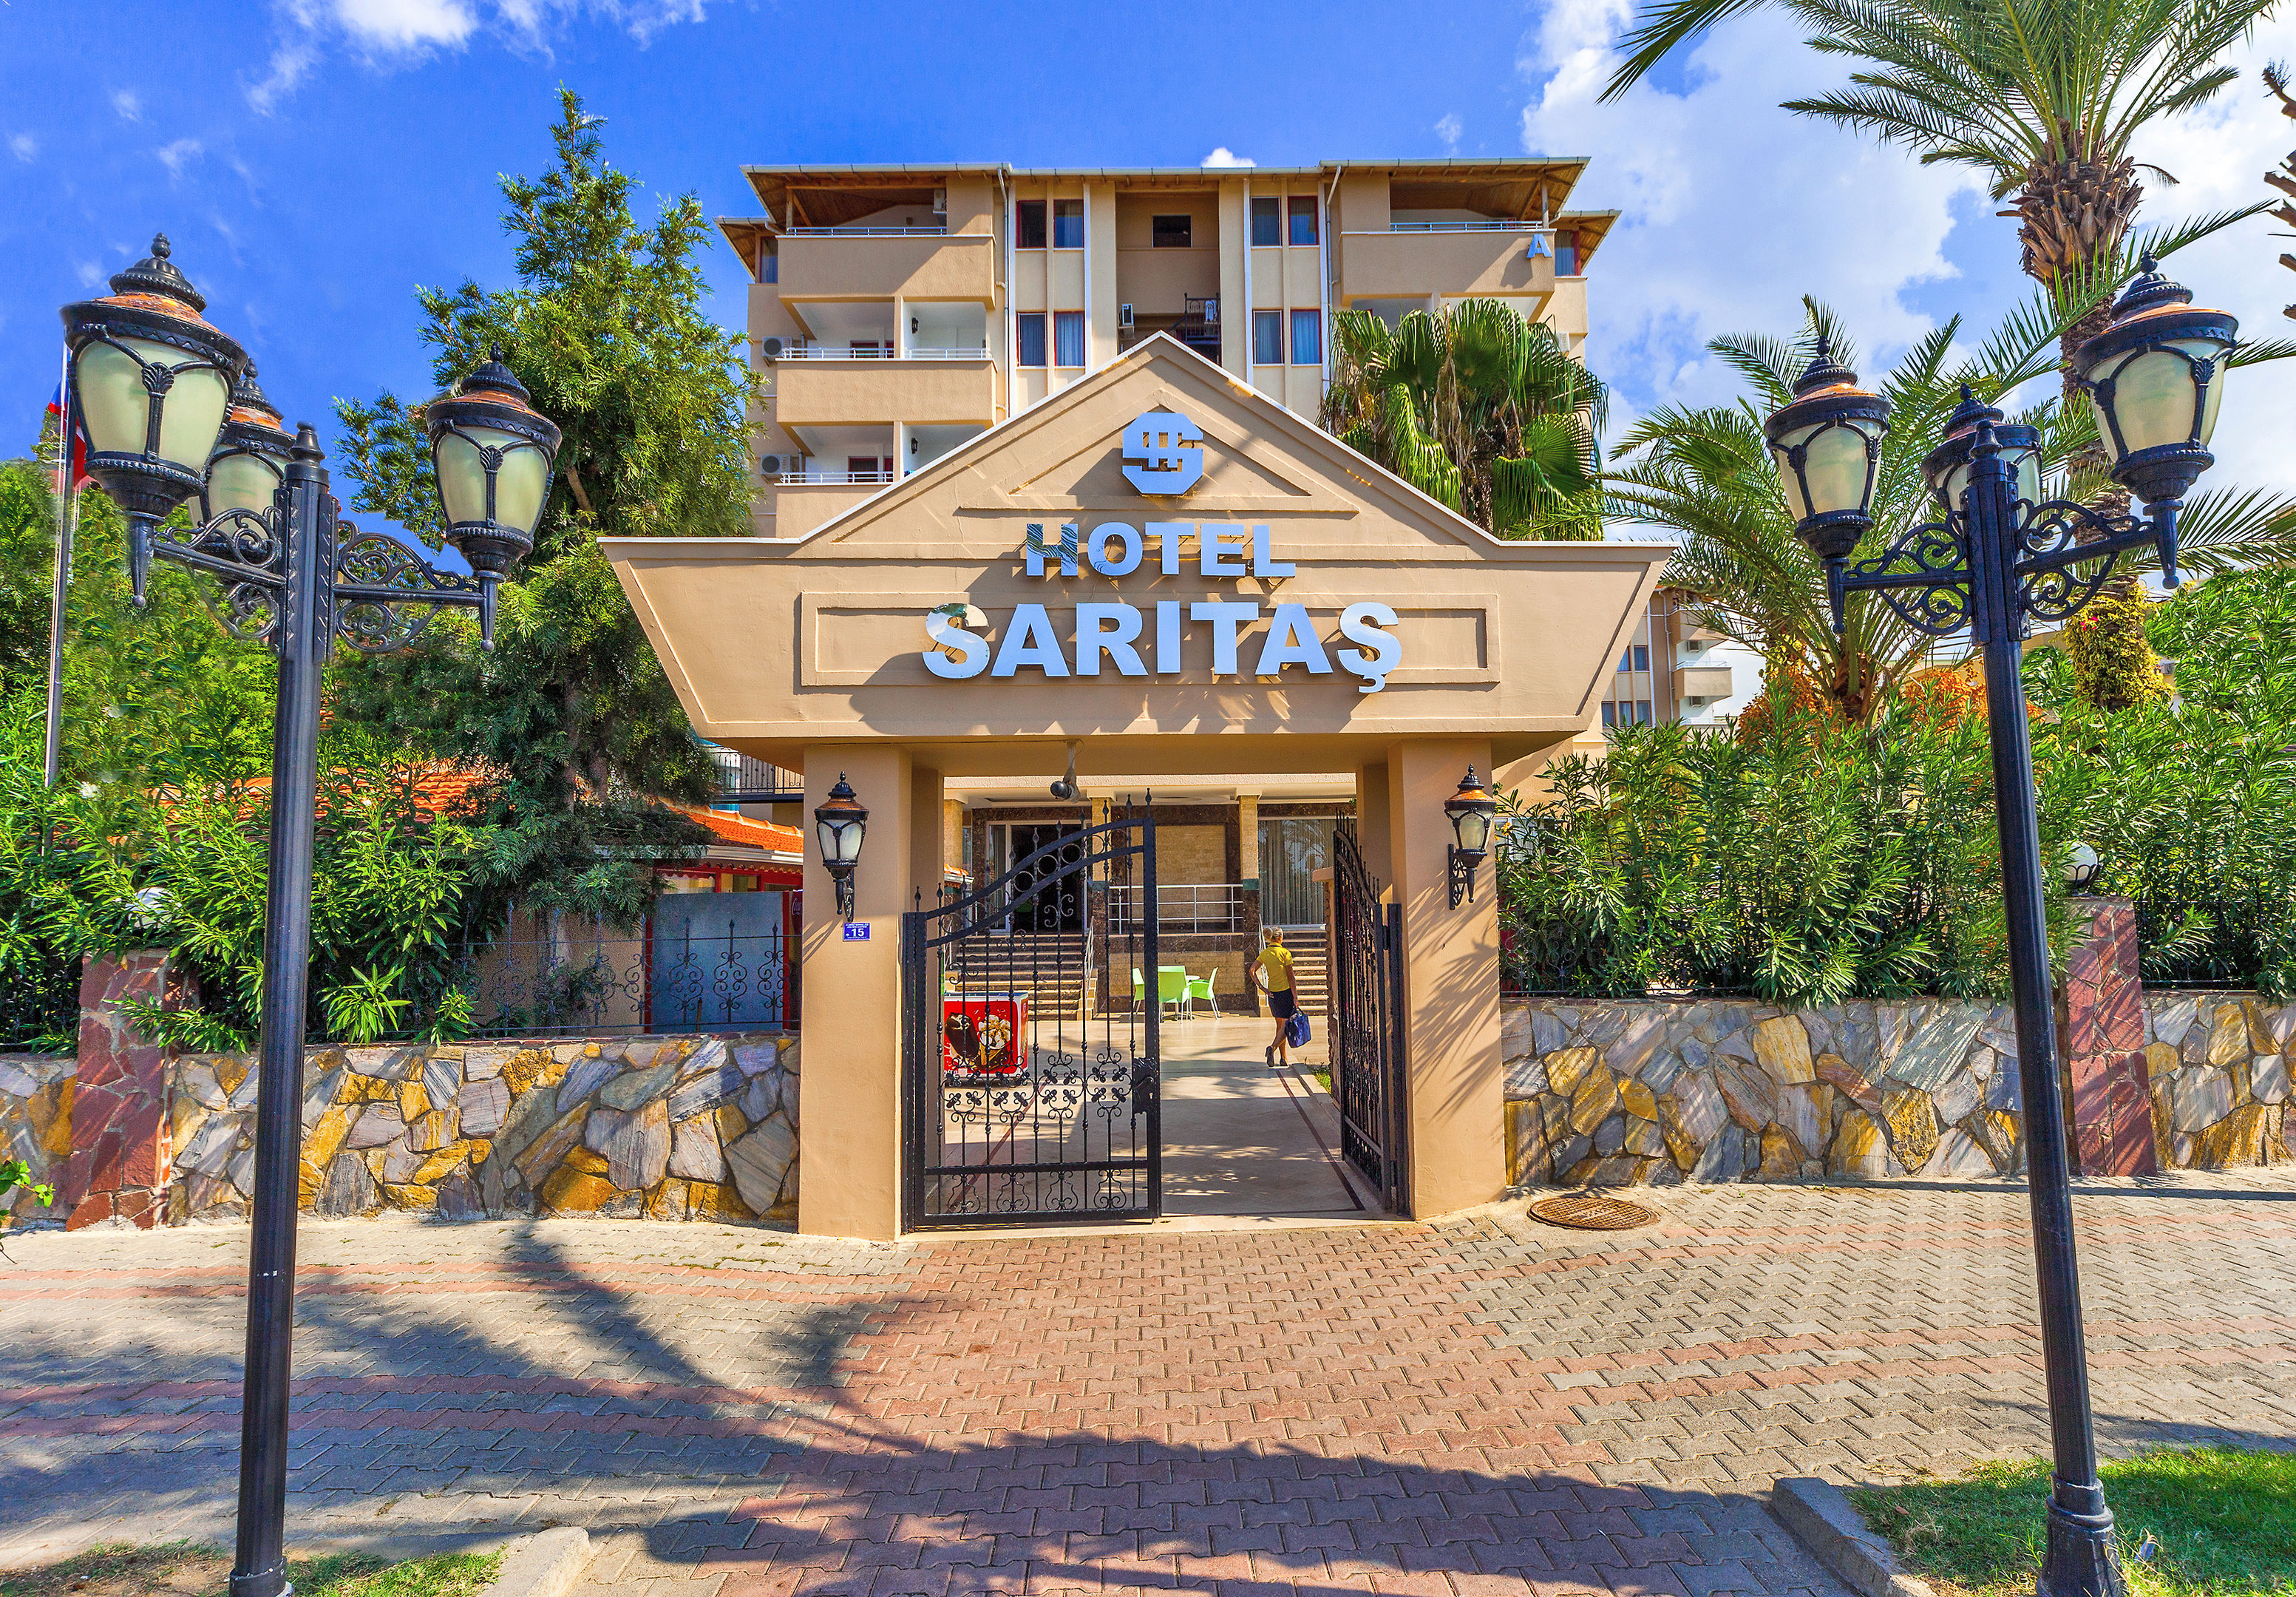 SARITAS HOTEL